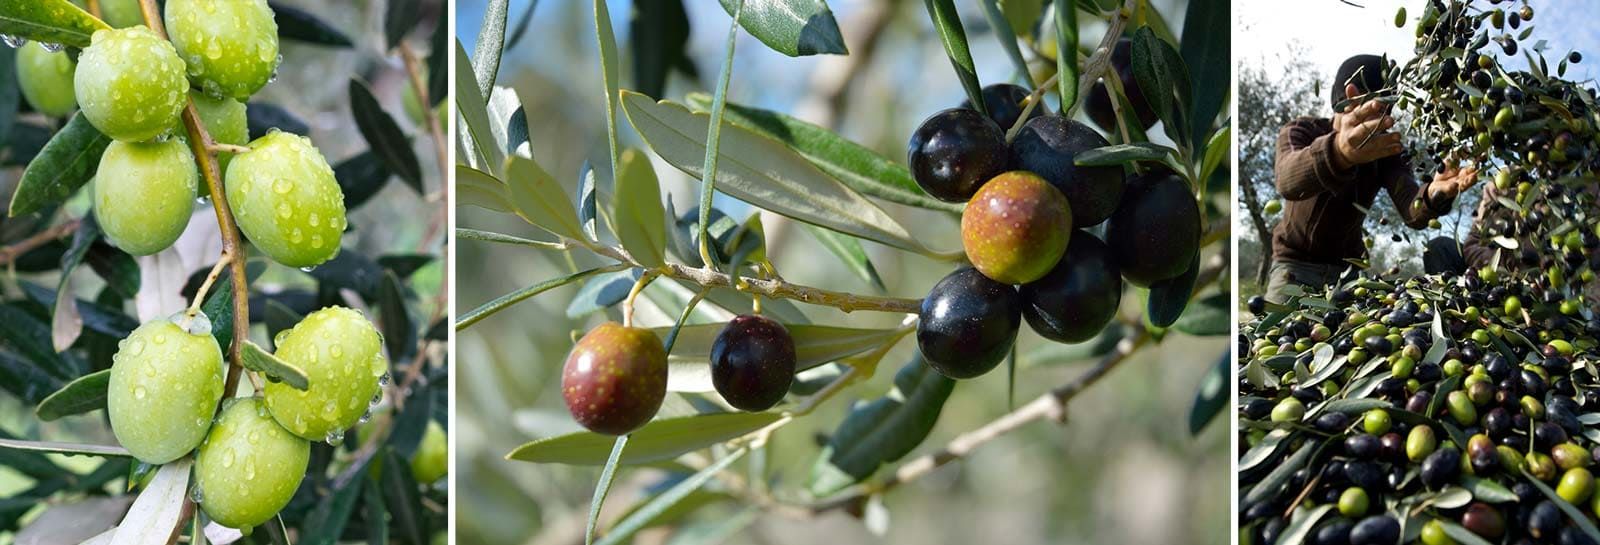 olives sur des branches